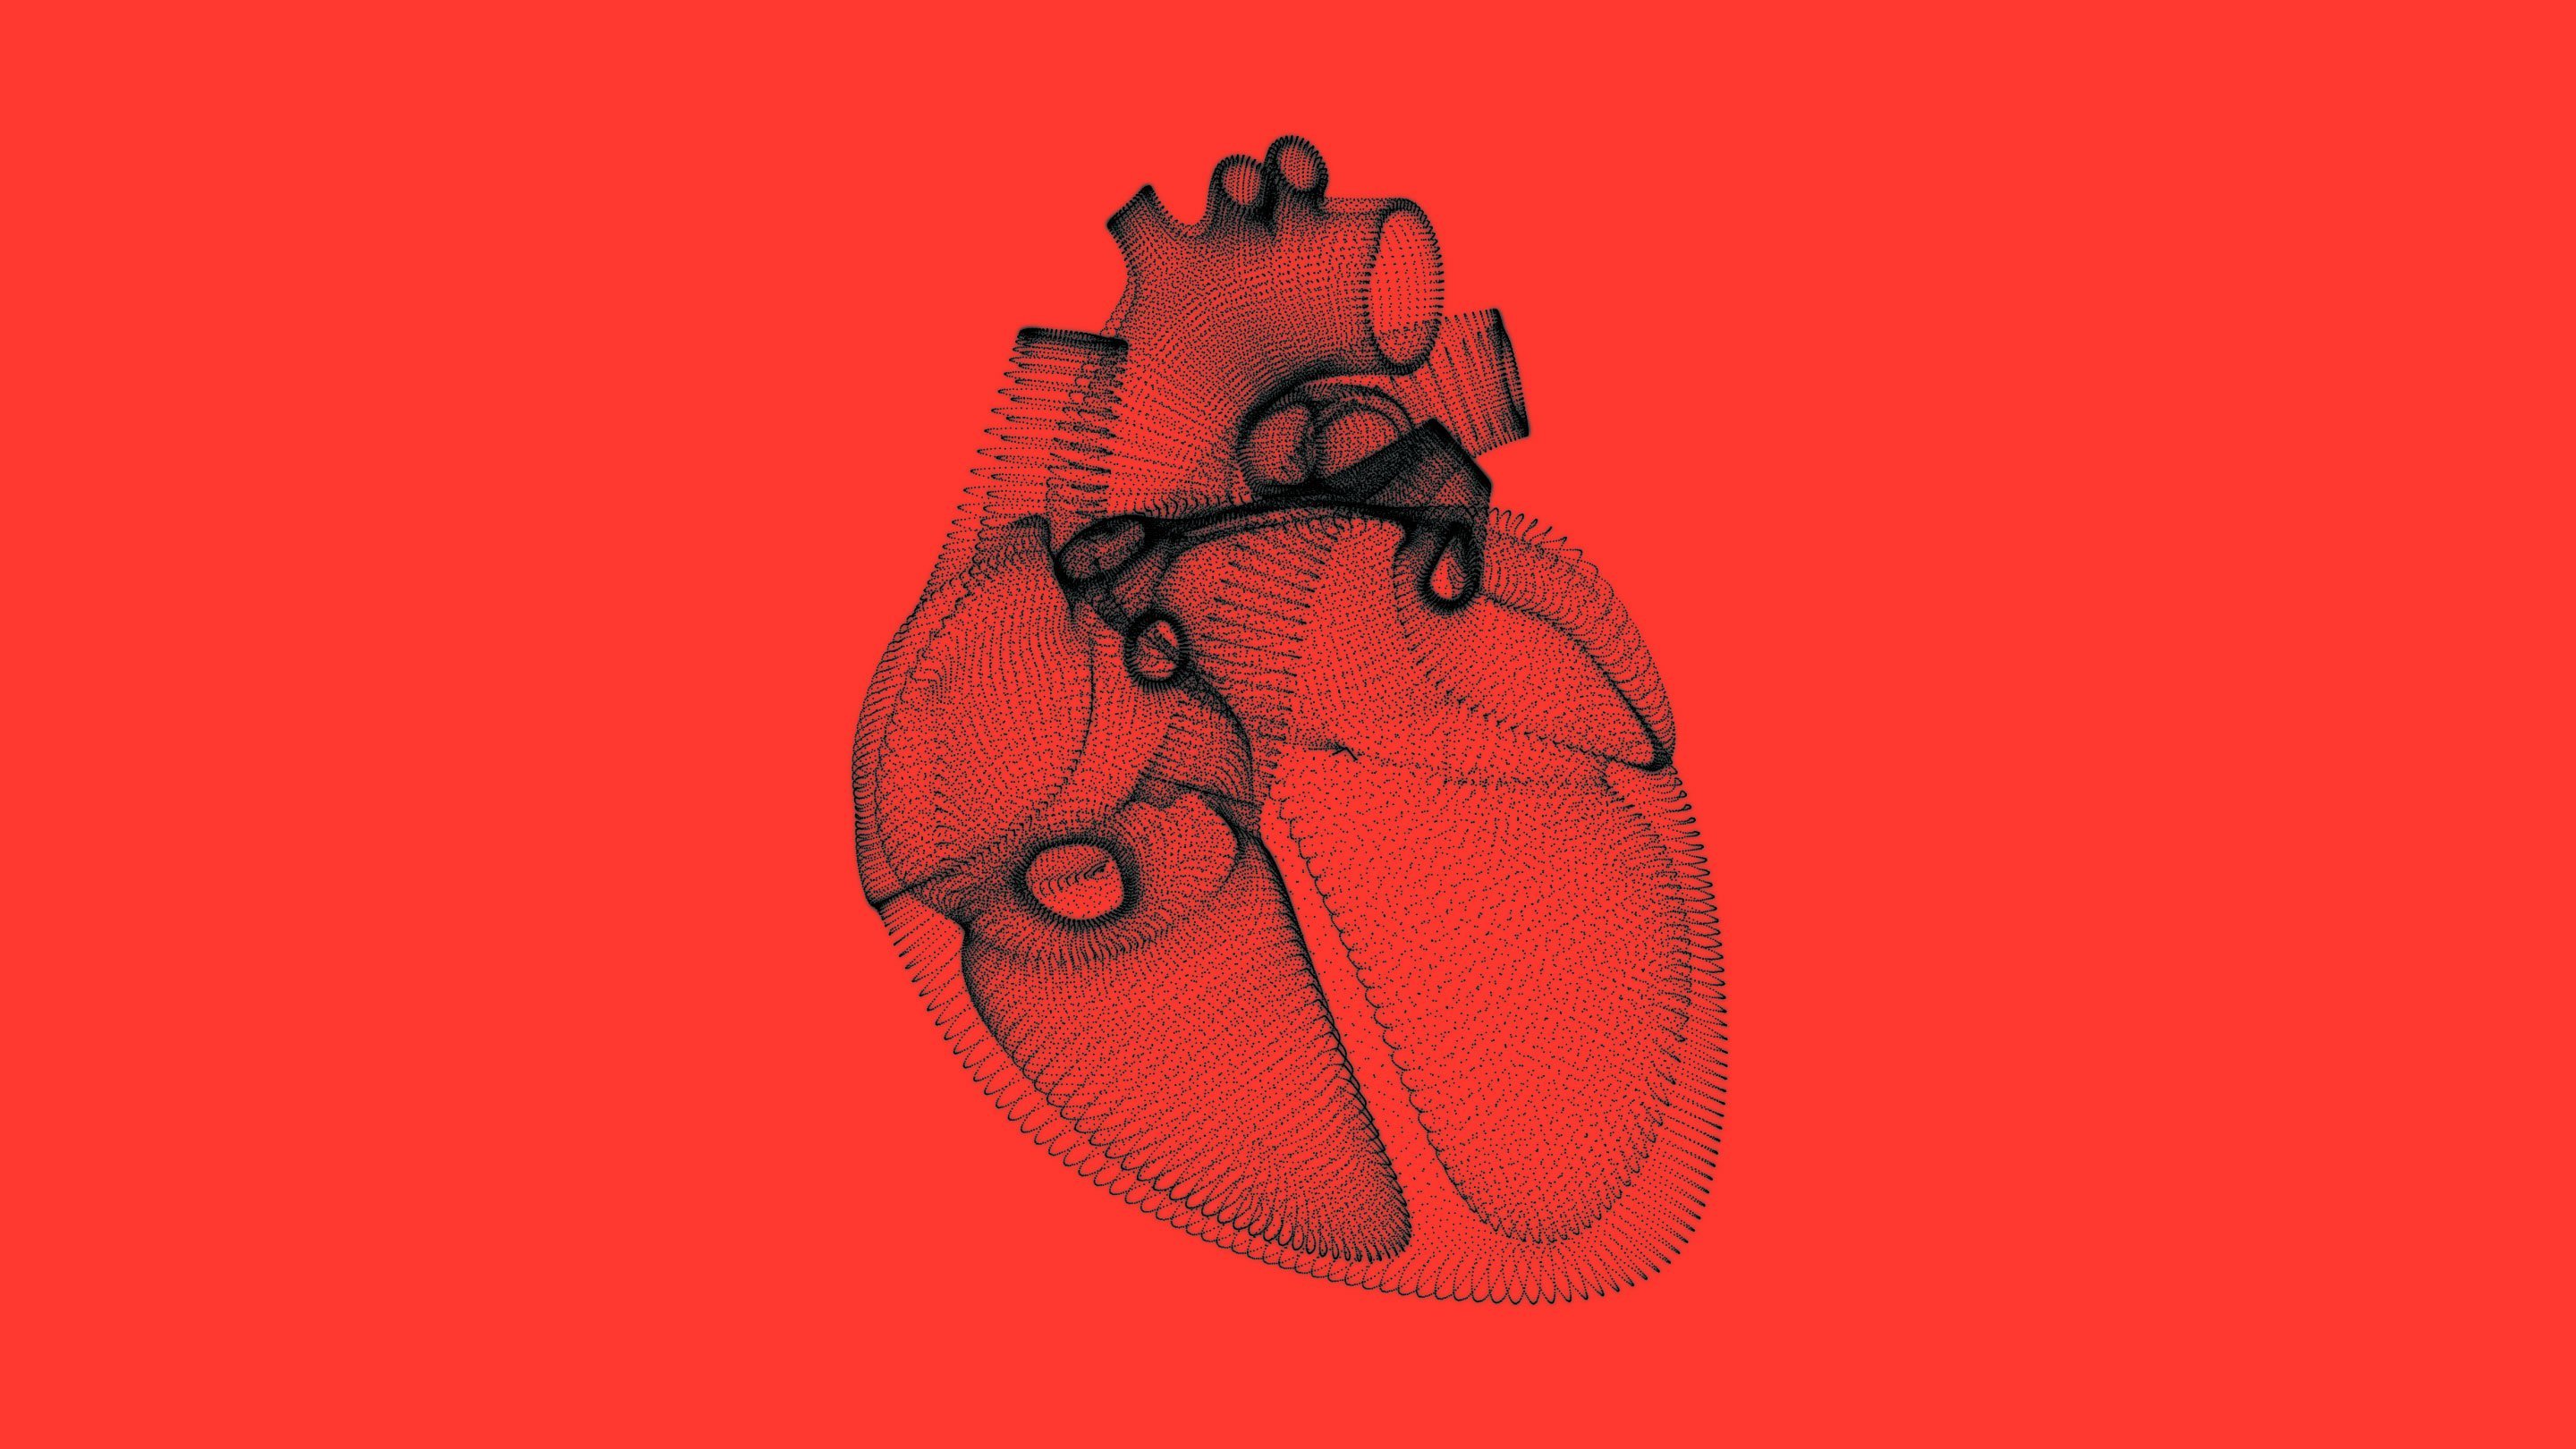 Heartbeat 2880 Lede Still كيف يؤثر قلبك على ما تتصوره وتخاف منه؟ مجلة نقطة العلمية